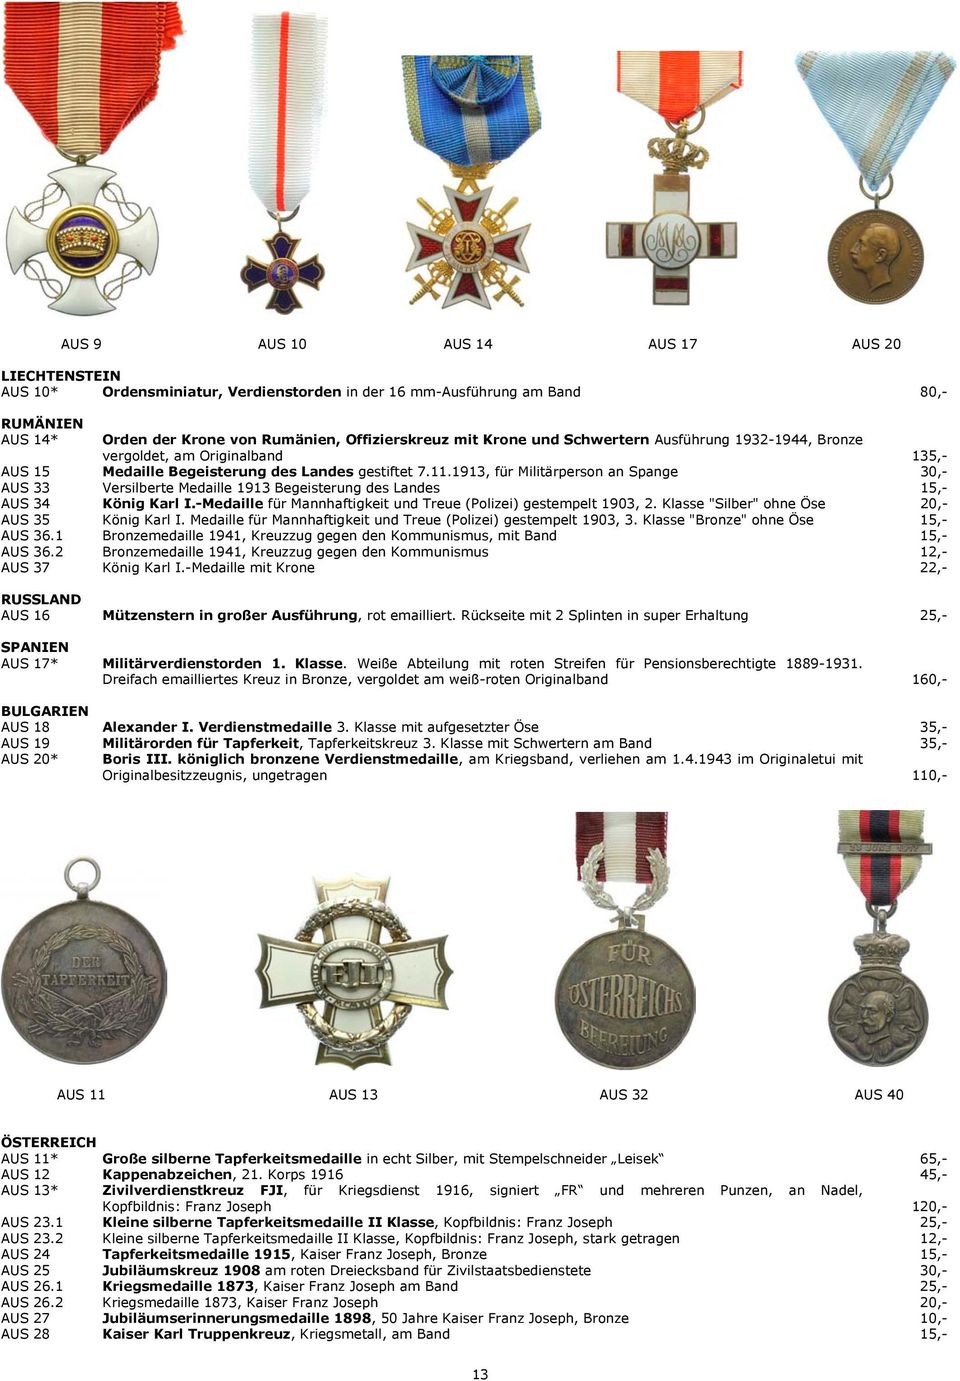 1913, für Militärperson an Spange 30,- AUS 33 Versilberte Medaille 1913 Begeisterung des Landes 15,- AUS 34 König Karl I.-Medaille für Mannhaftigkeit und Treue (Polizei) gestempelt 1903, 2.